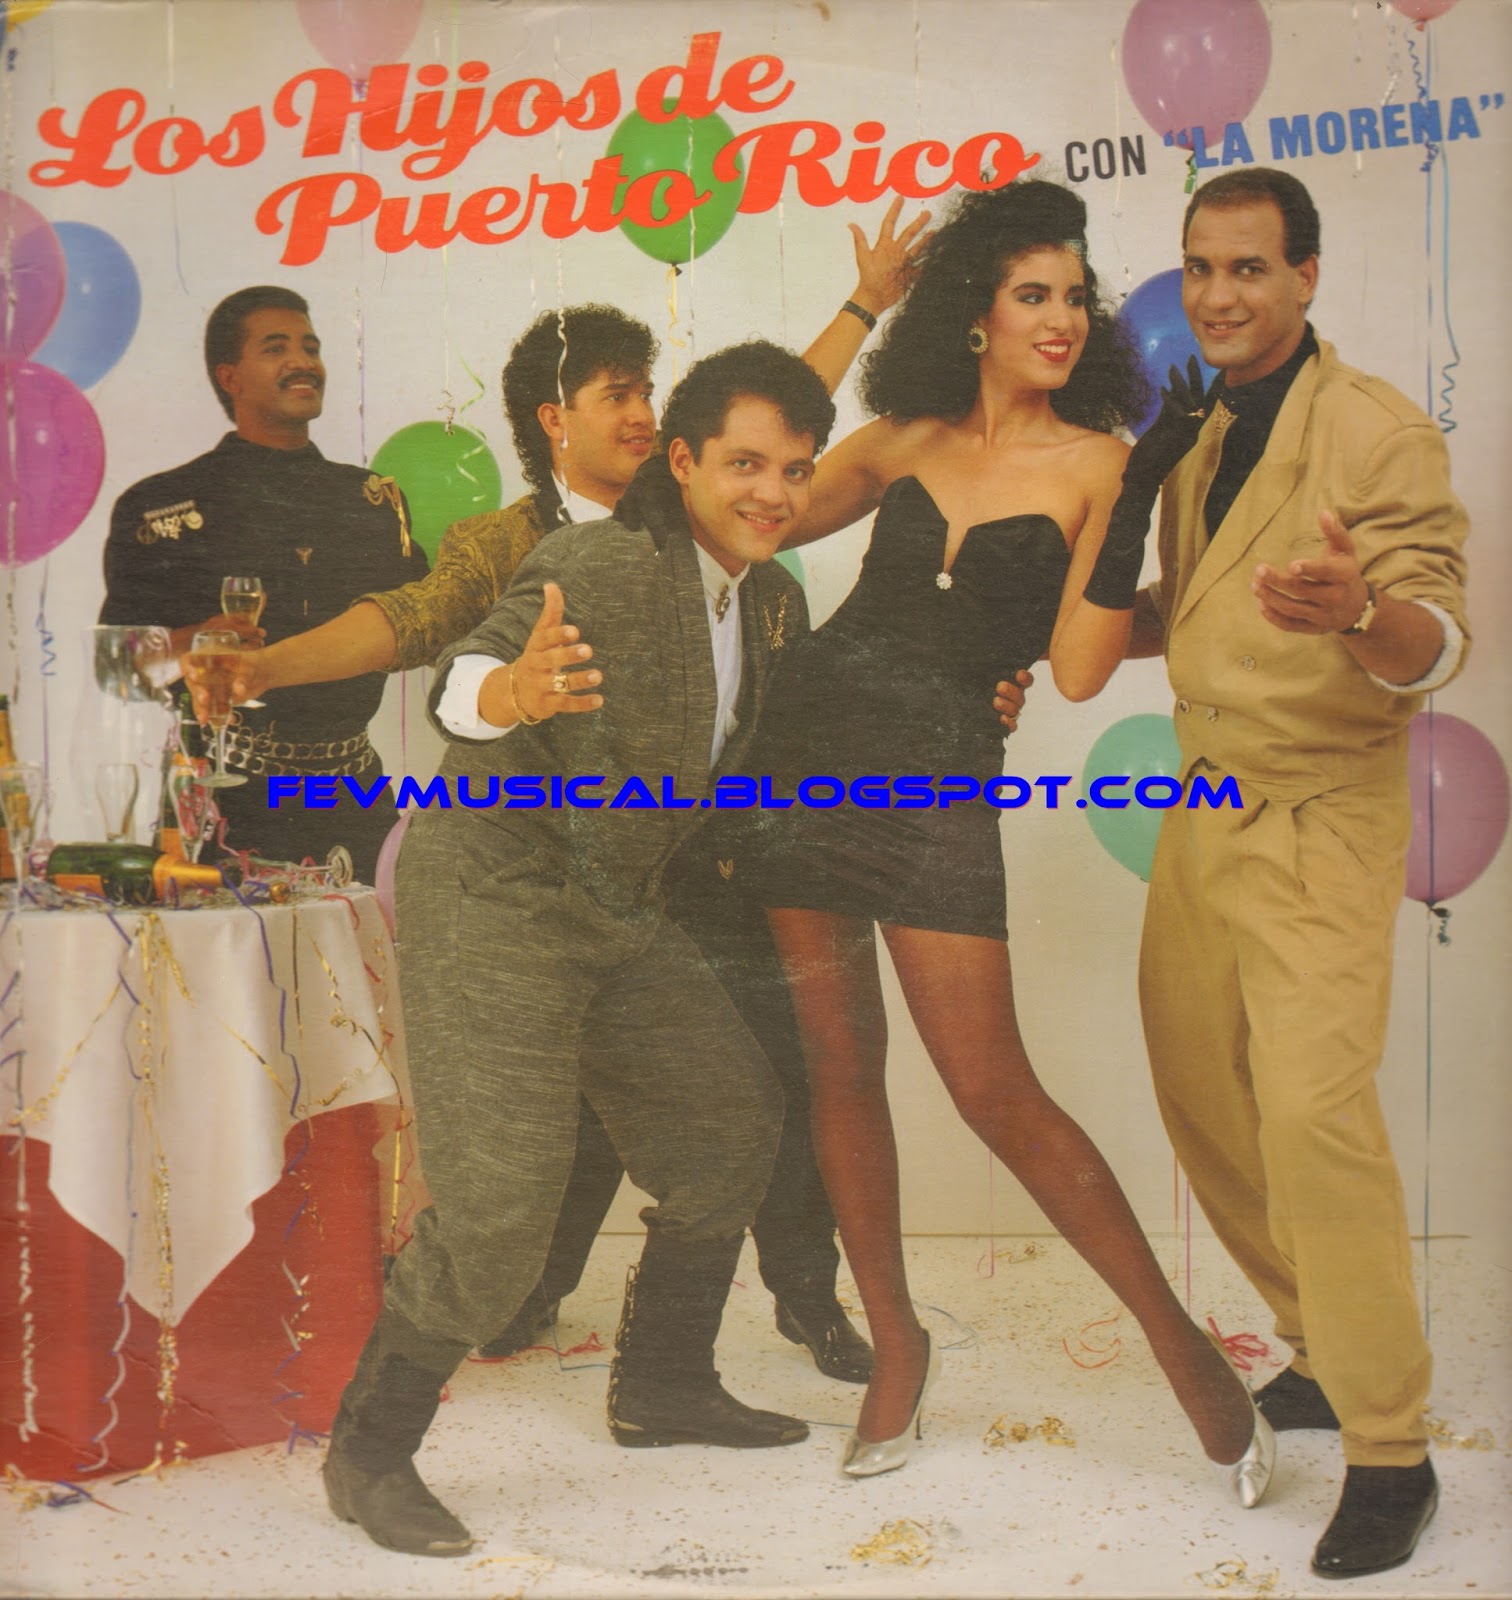 FEV MUSICAL: 1989 - Los Hijos Del Puerto Rico - Con La Morena (THRodven)